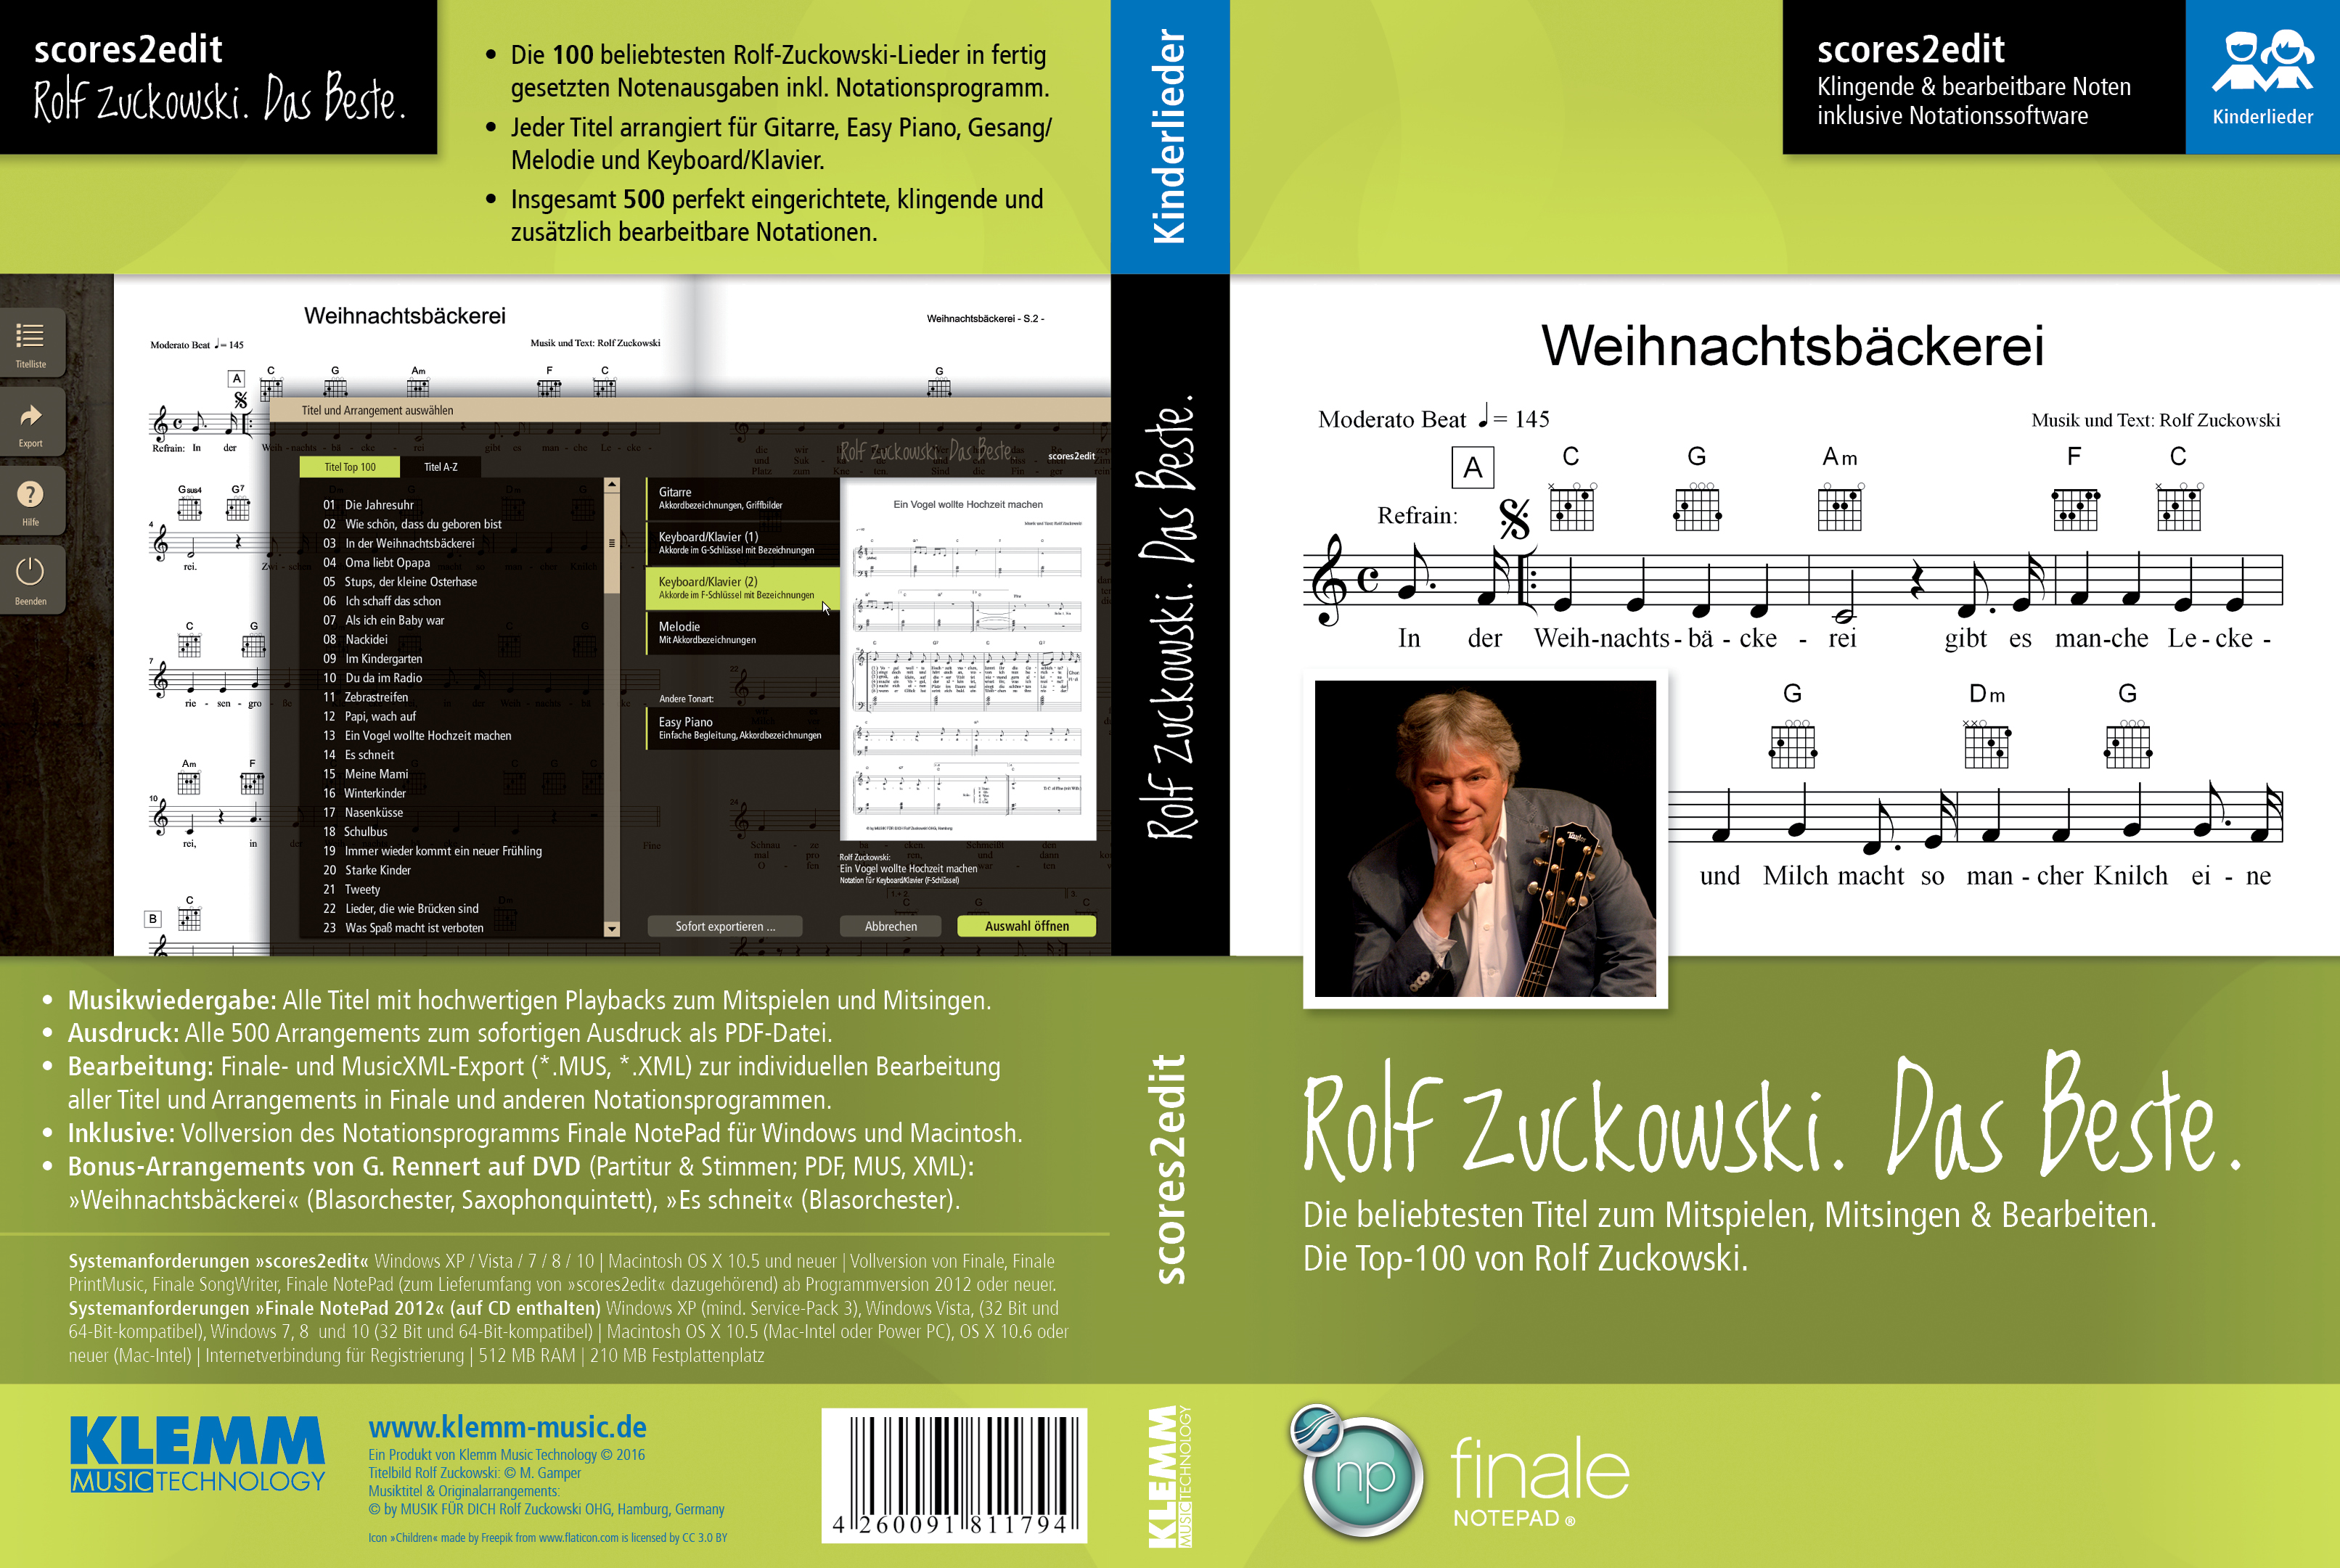 Scores2Edit Rolf Zuckowski - Das Beste